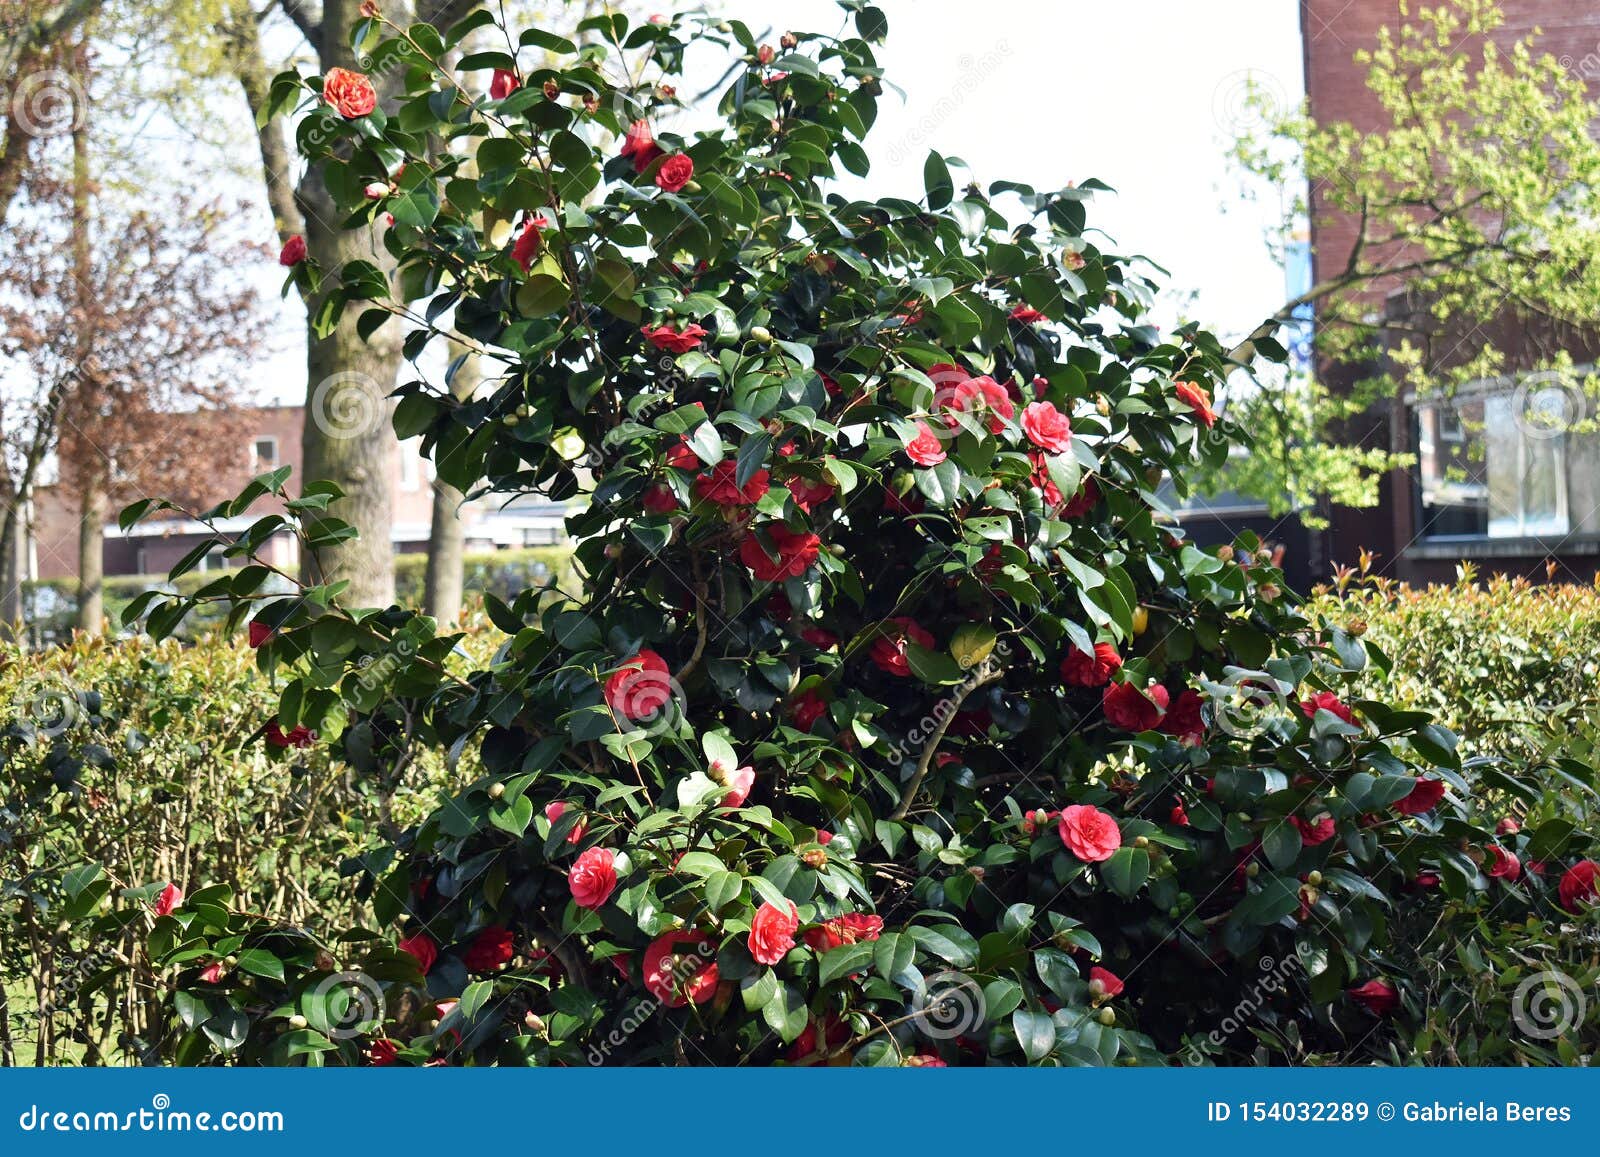 Arbuste De Camellia Japonica Dans Le Jardin Image stock - Image du asie,  fermer: 154032289